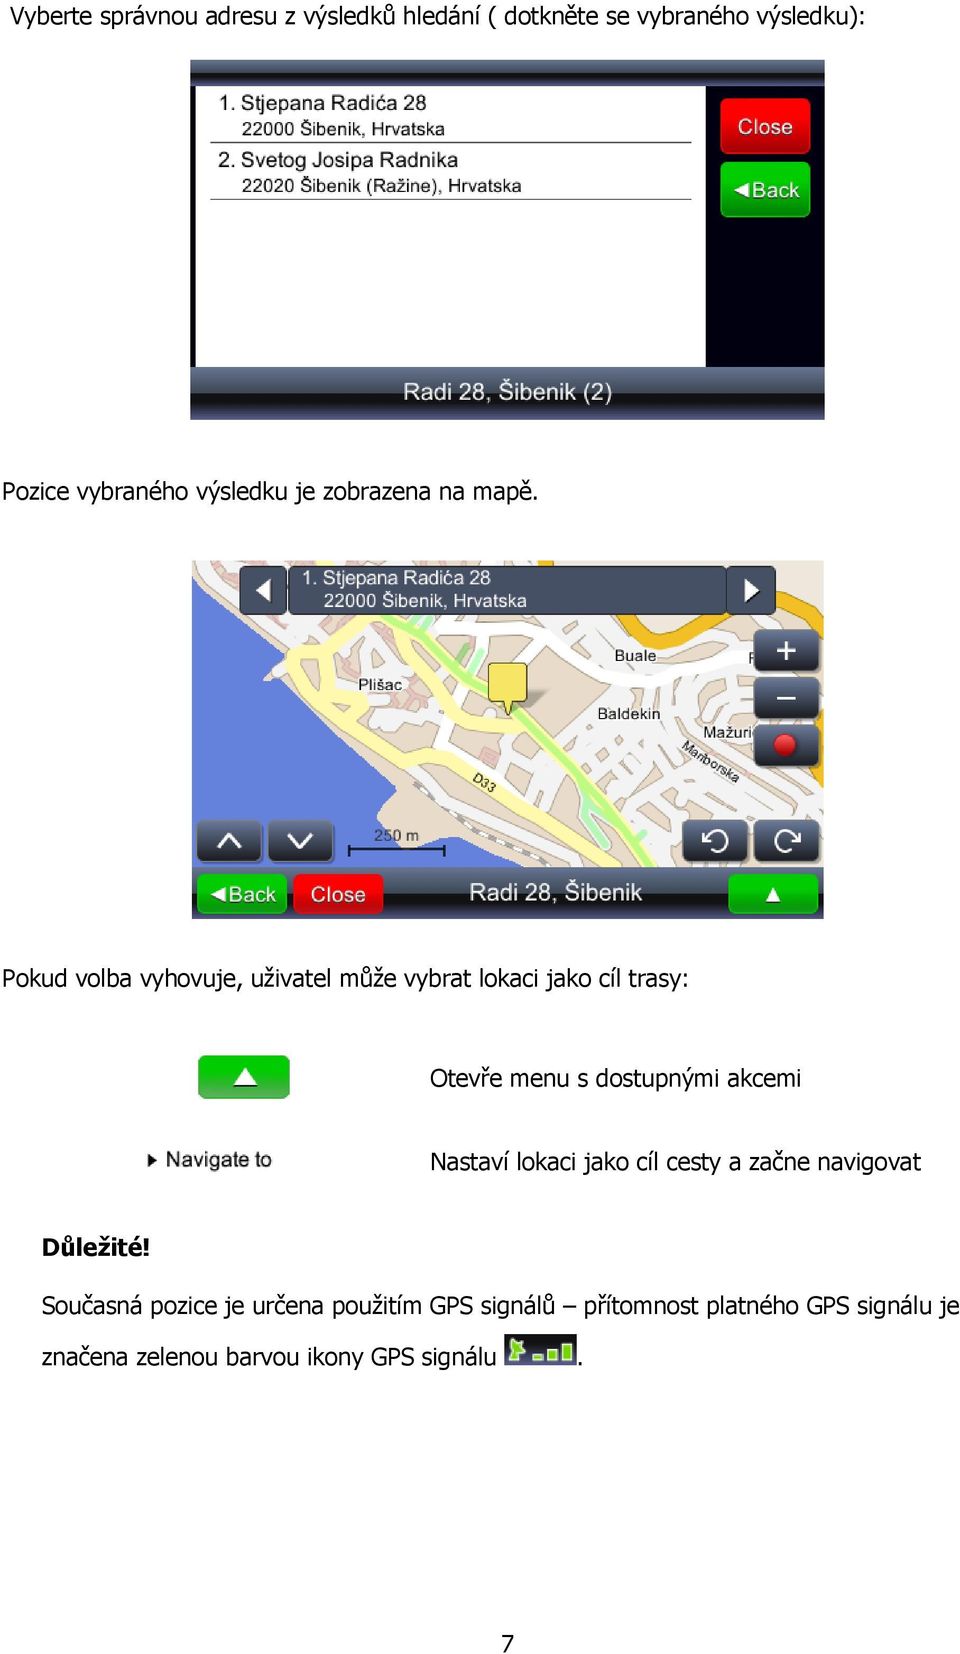 Pokud volba vyhovuje, uživatel může vybrat lokaci jako cíl trasy: Otevře menu s dostupnými akcemi